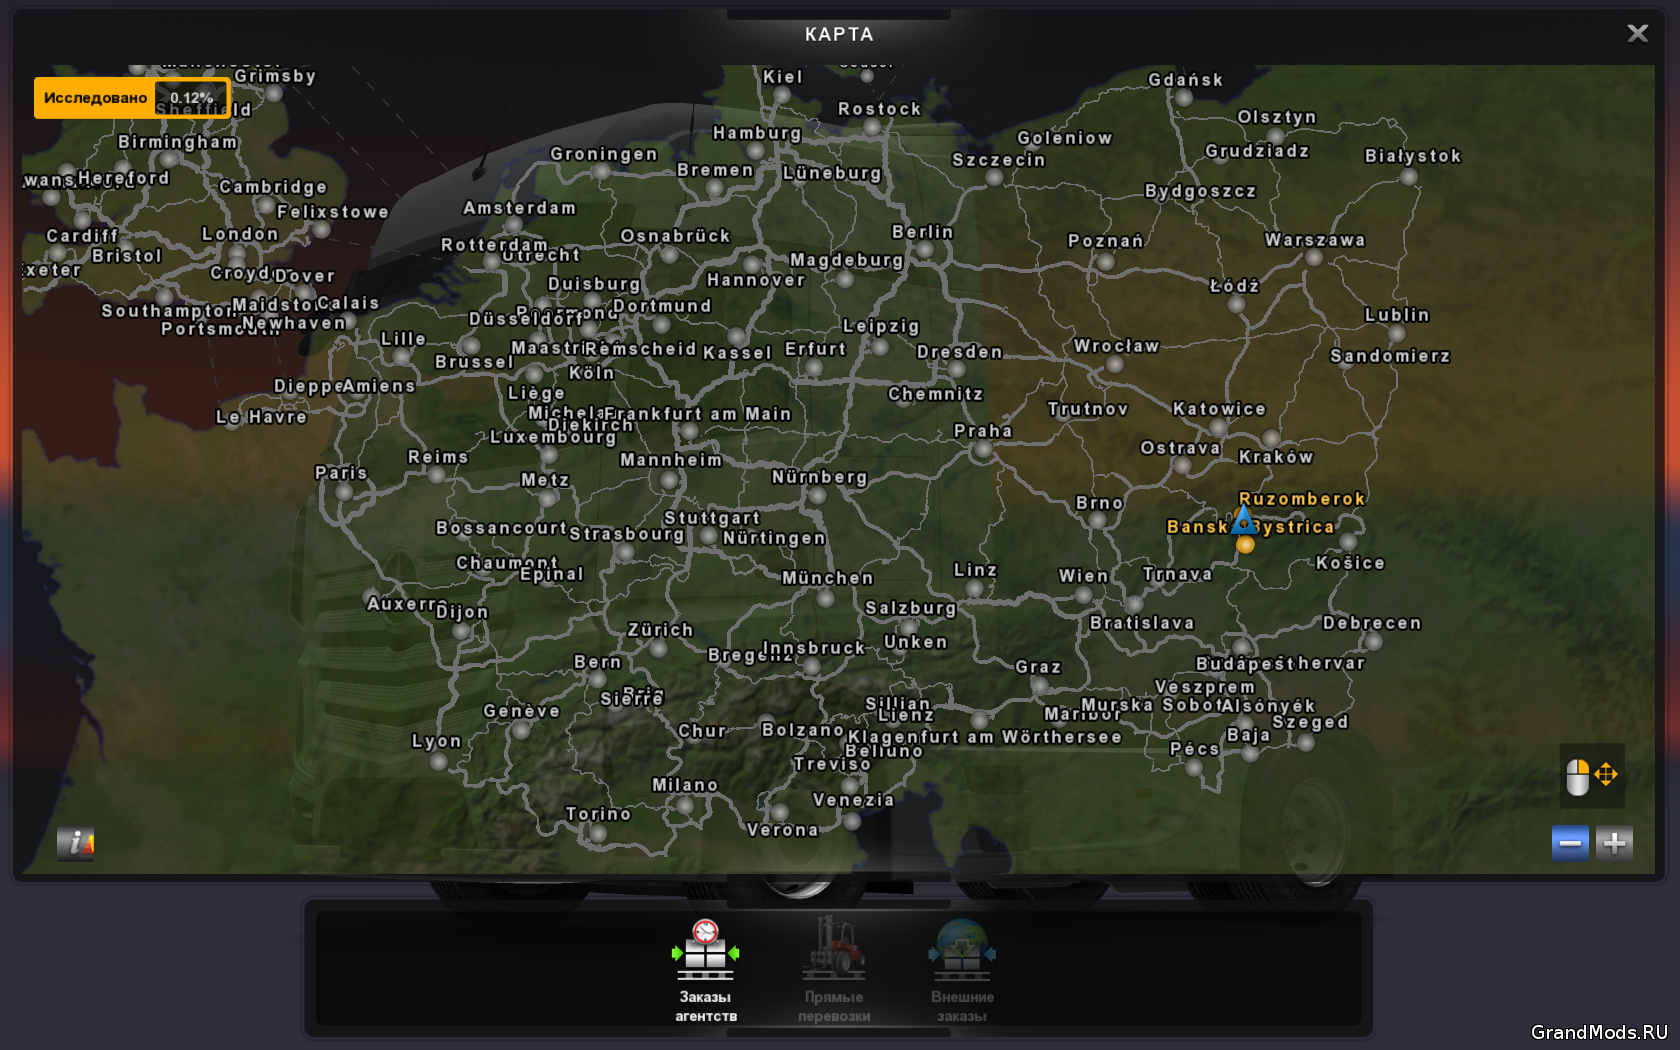 Джей карта мод. Euro Truck Simulator 2 карта мира. Карта MHA Pro v1.39 для ETS 2 (1.39.X). Подложка для карты ETS 2 1.40. Мод карта на весь экран.